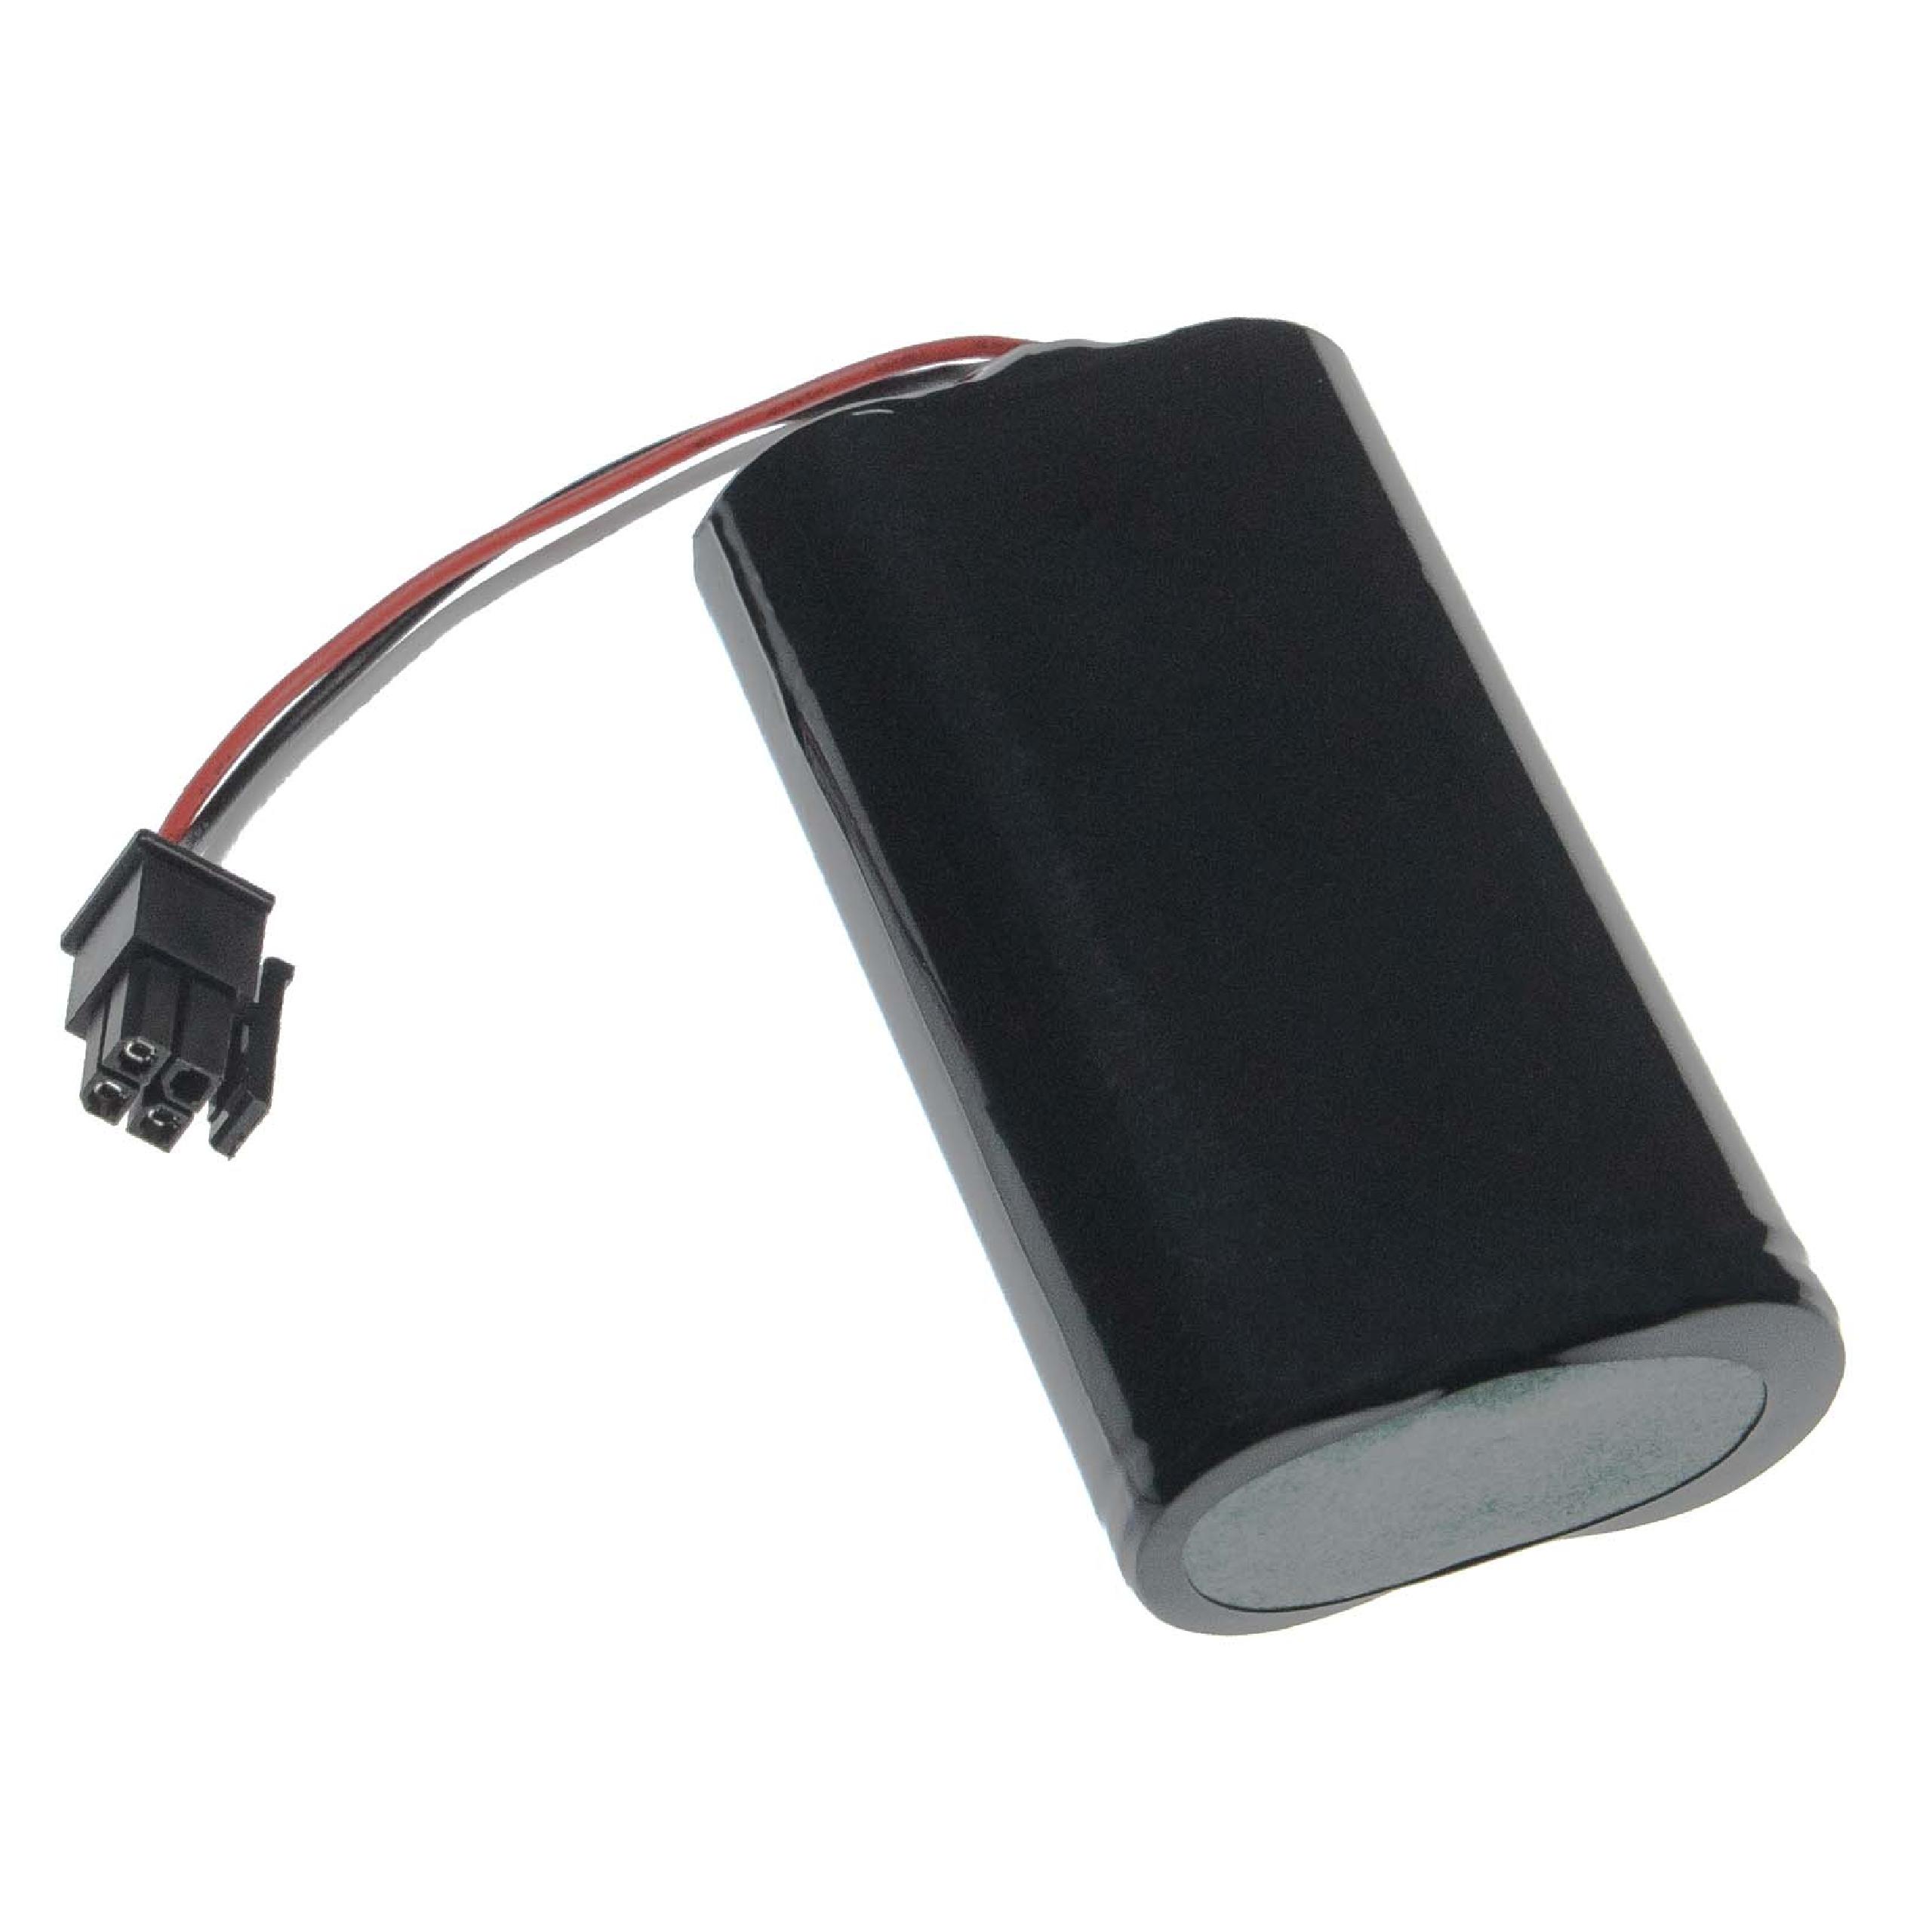 Batterie remplace Soundcast 2-540-006-01 pour enceinte Soundcast - 5200mAh 3,7V Li-ion